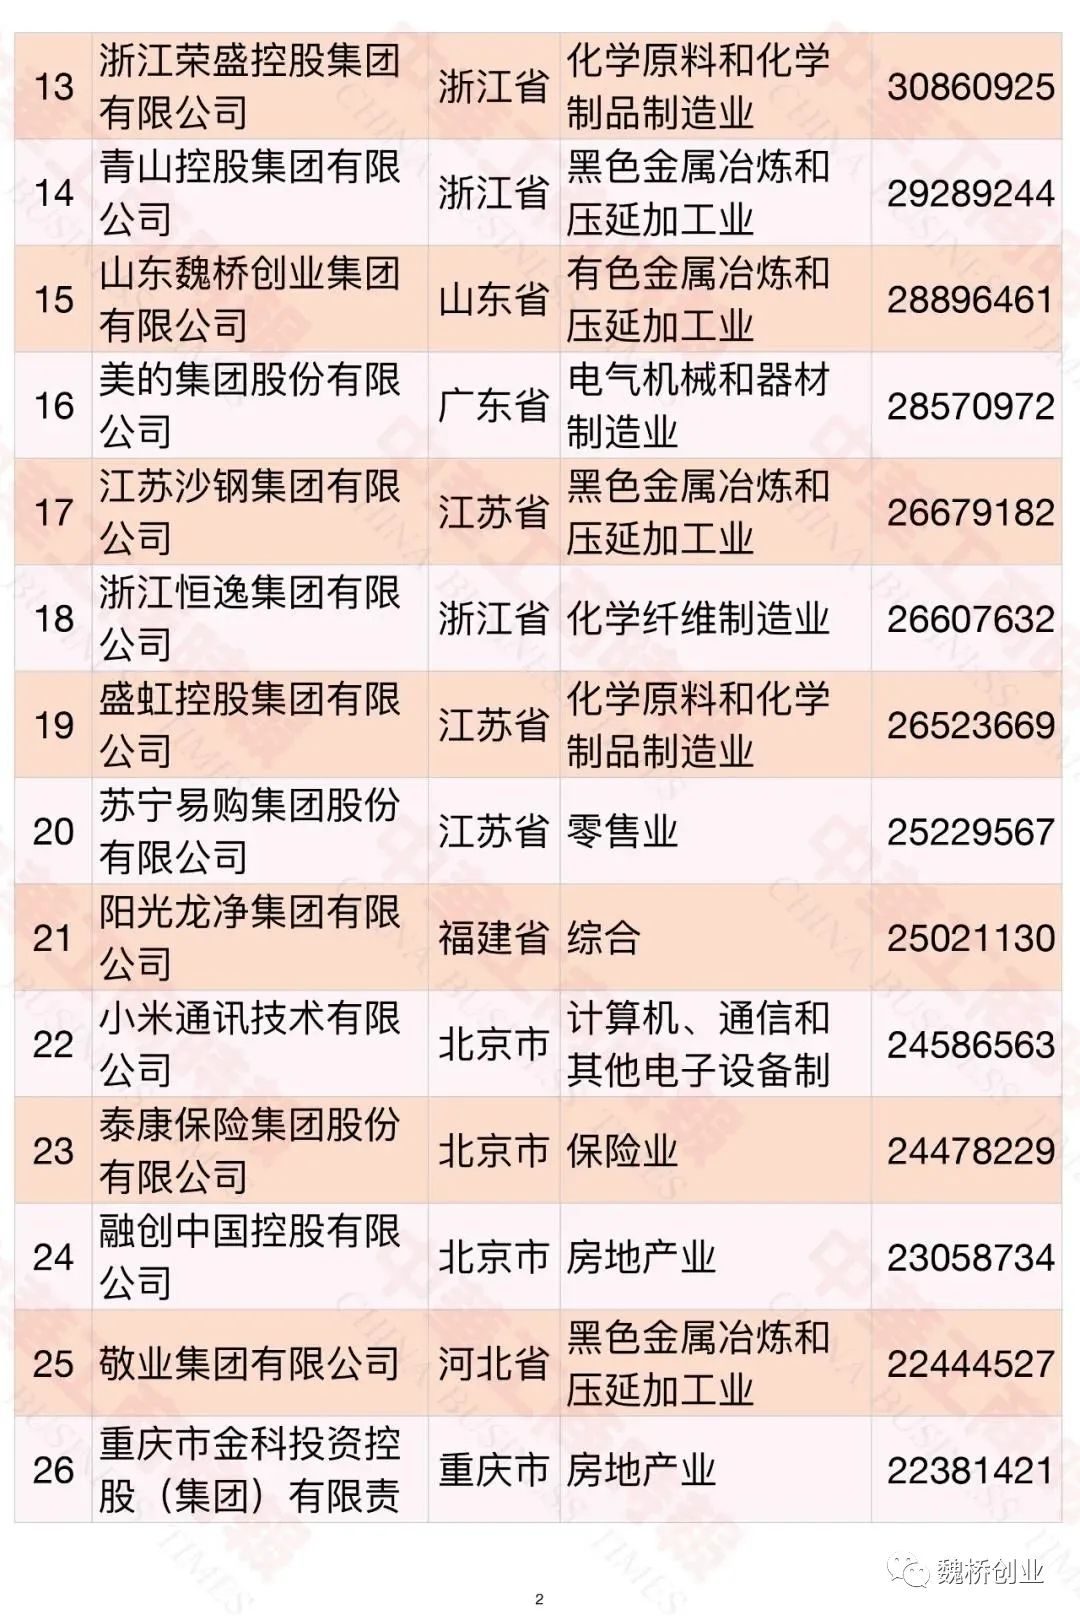 2021中国企业500强榜单发布 魏桥创业集团列第81位